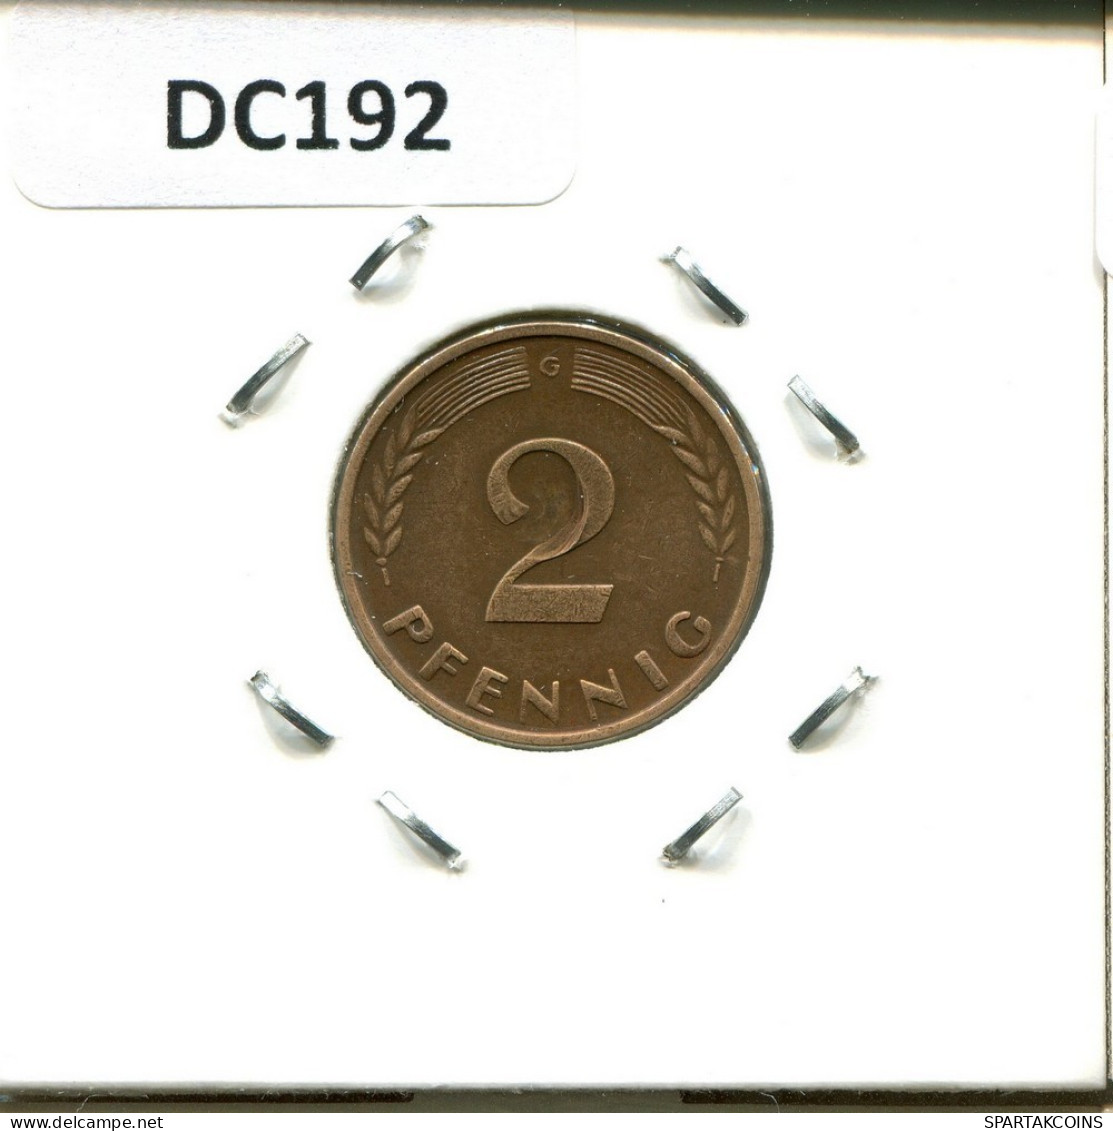 2 PFENNIG 1964 G BRD ALEMANIA Moneda GERMANY #DC192.E.A - 2 Pfennig